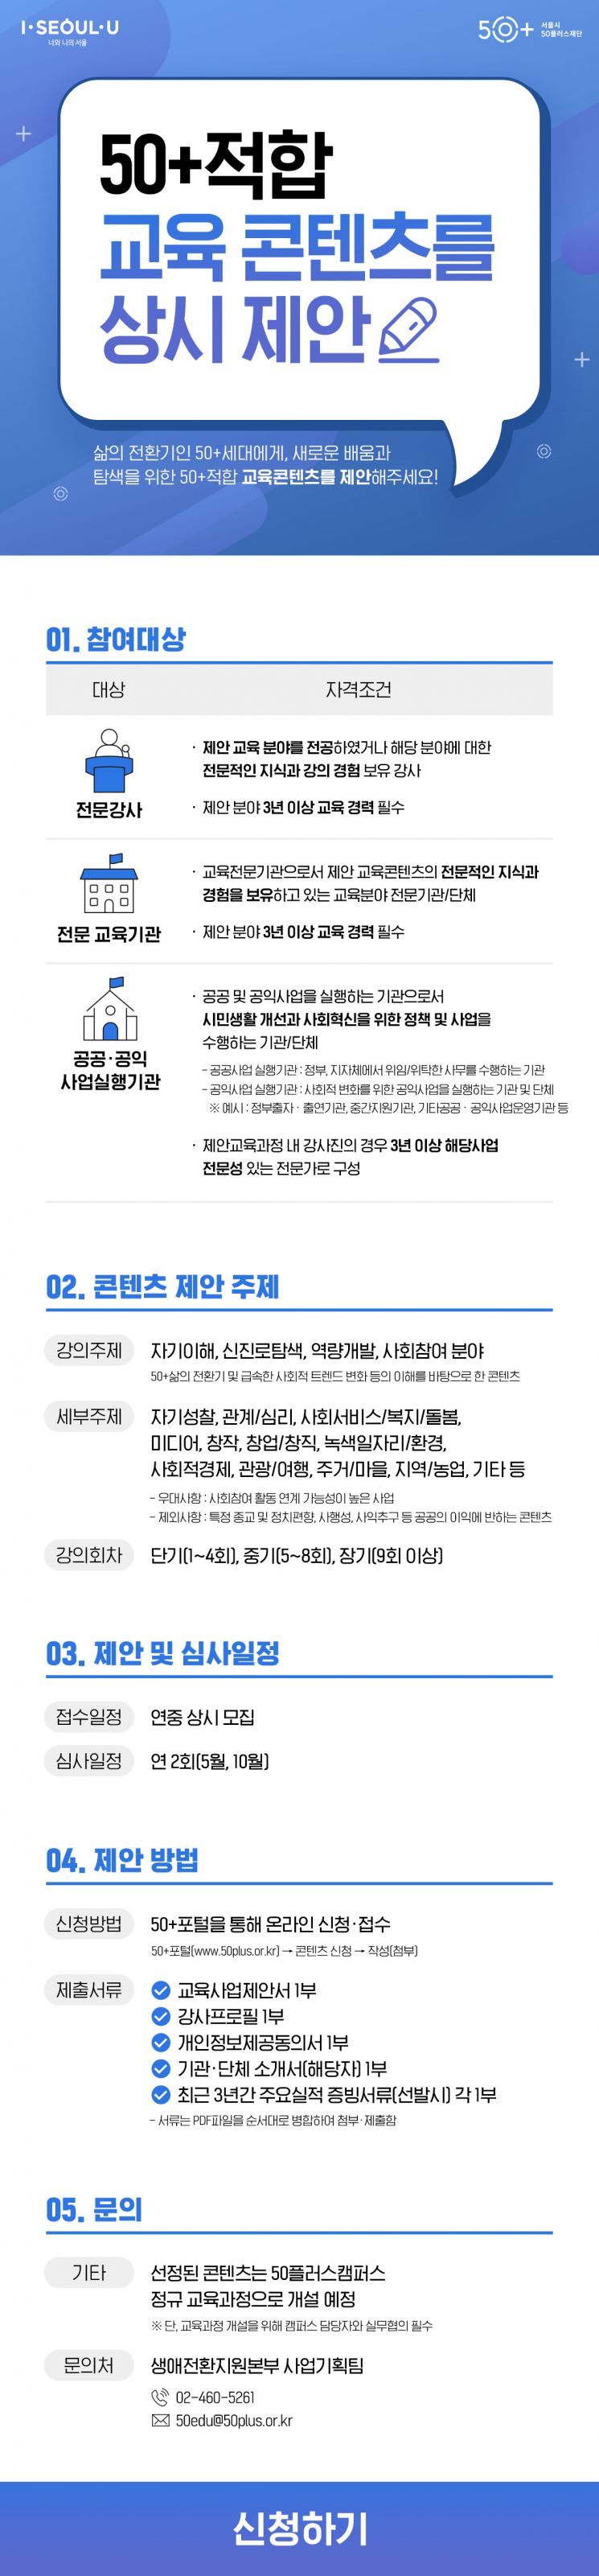 서울시50플러스재단, 50+세대 교육 콘텐츠 발굴 공모